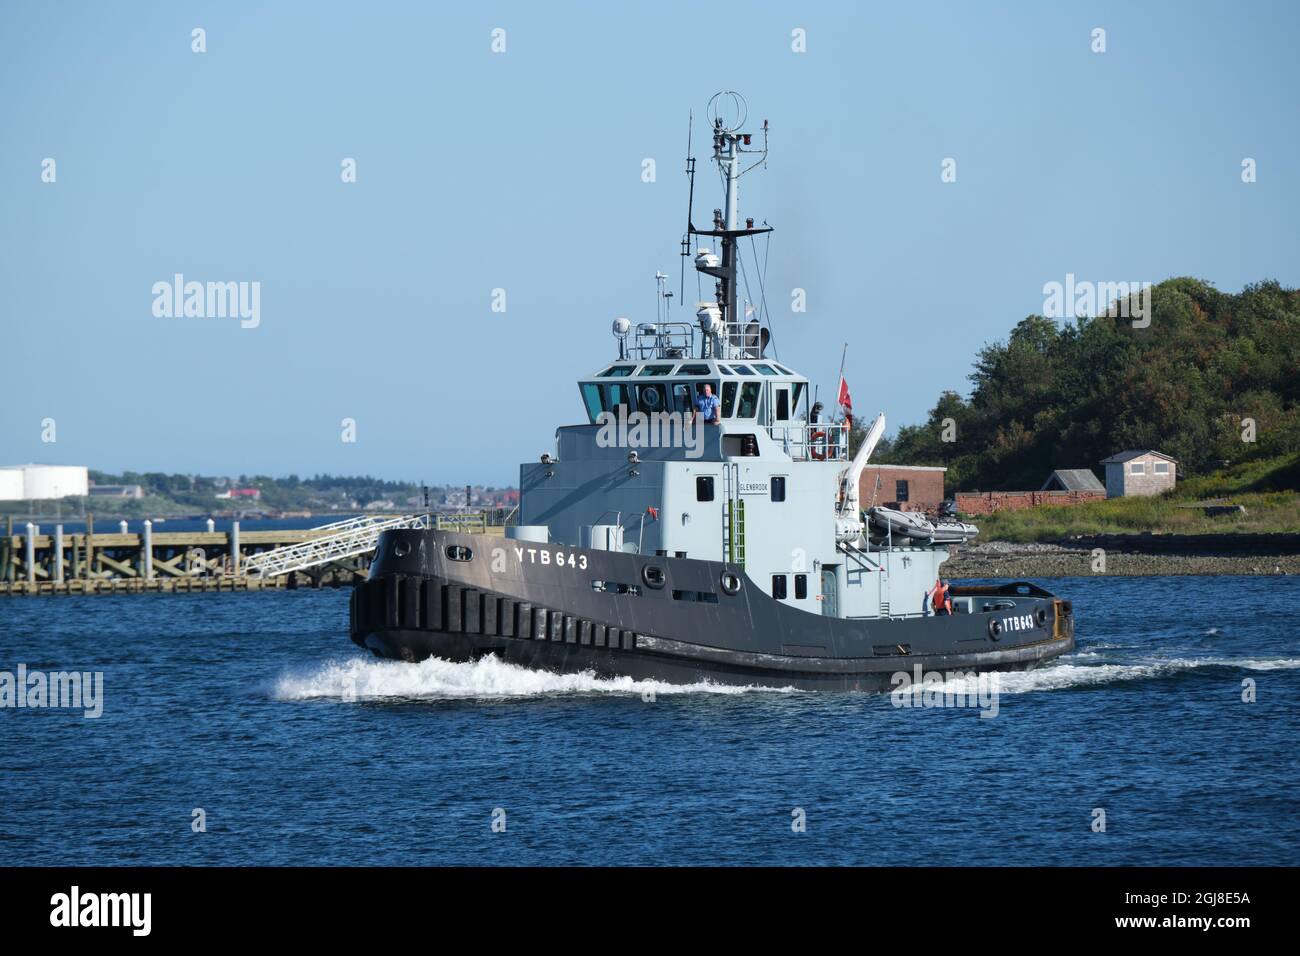 CFAV GLENBROOK YTB643 bateau à remorqueurs naviguant à travers l'île George dans le port de Halifax. Halifax, Canada. 7 septembre 2021. Banque D'Images